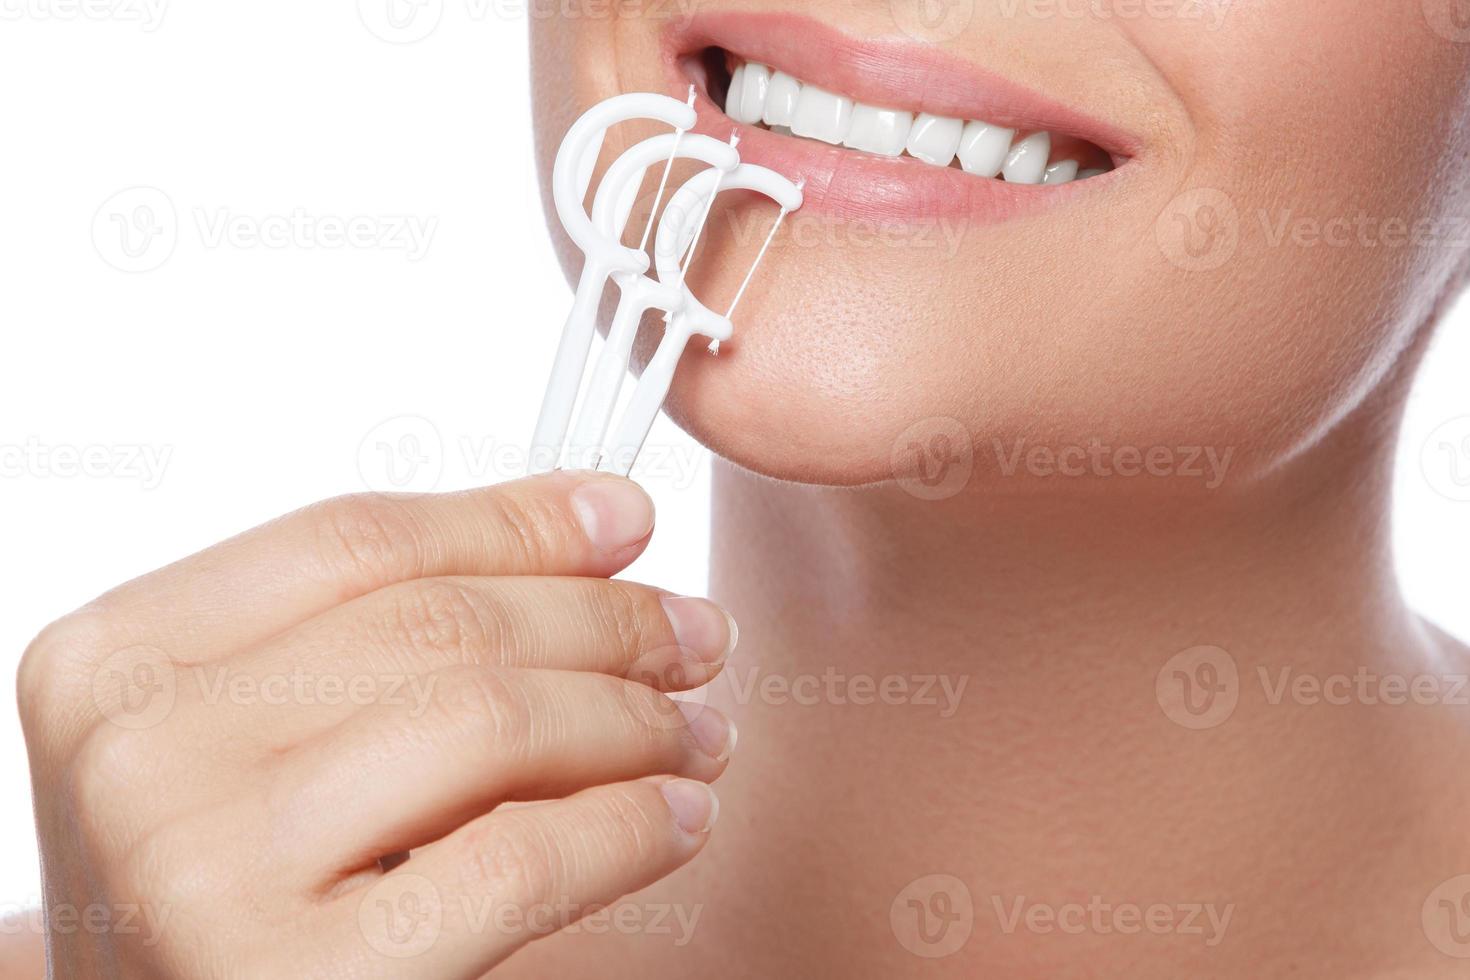 Frau mit Zahnseide auf weißem Hintergrund foto